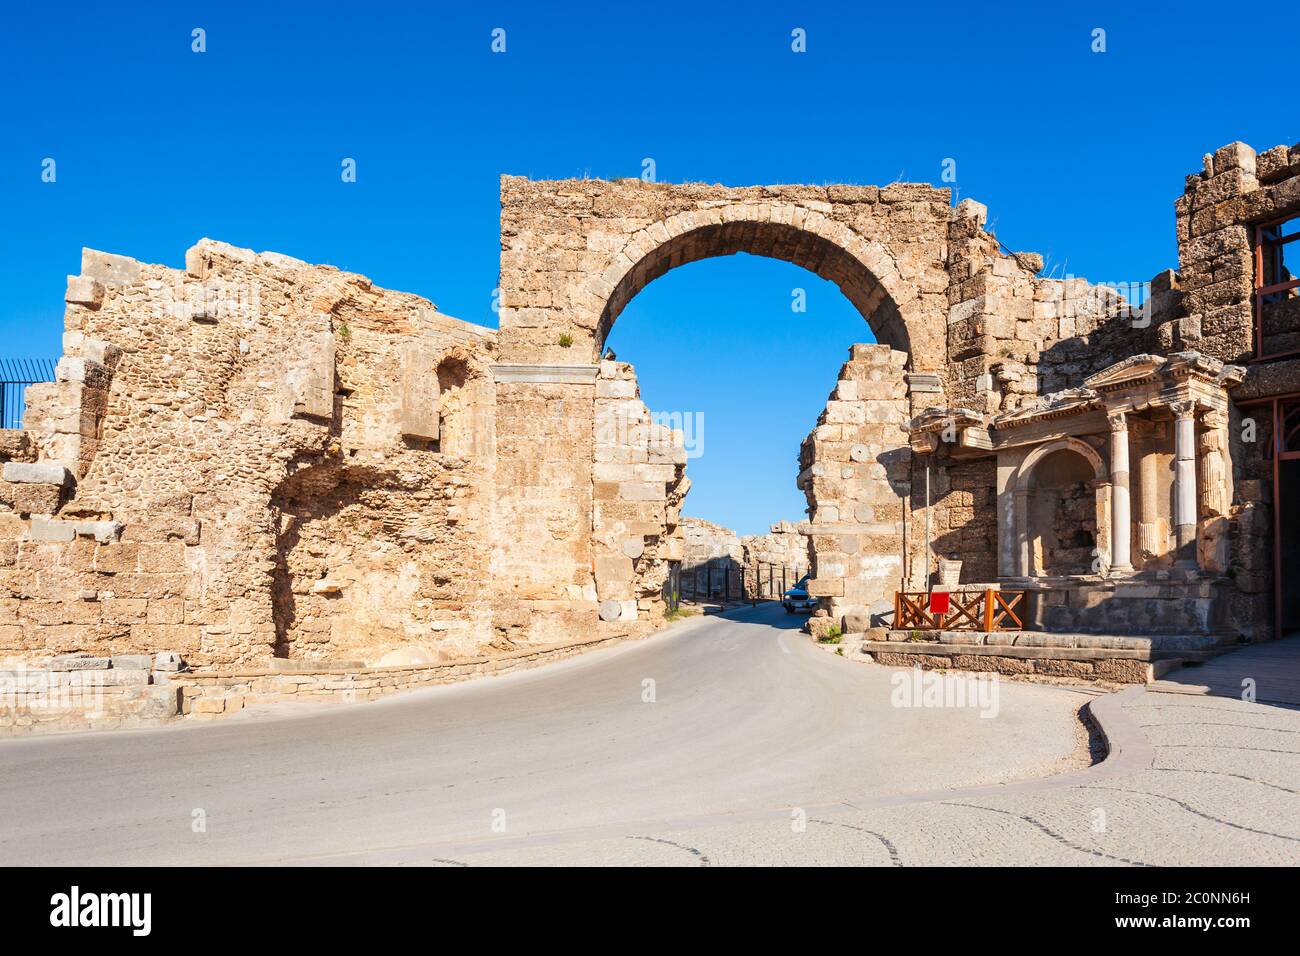 Fontaine Vespasien et porte d'entrée de l'ancienne ville de Side dans la région d'Antalya sur la côte méditerranéenne de la Turquie. Banque D'Images